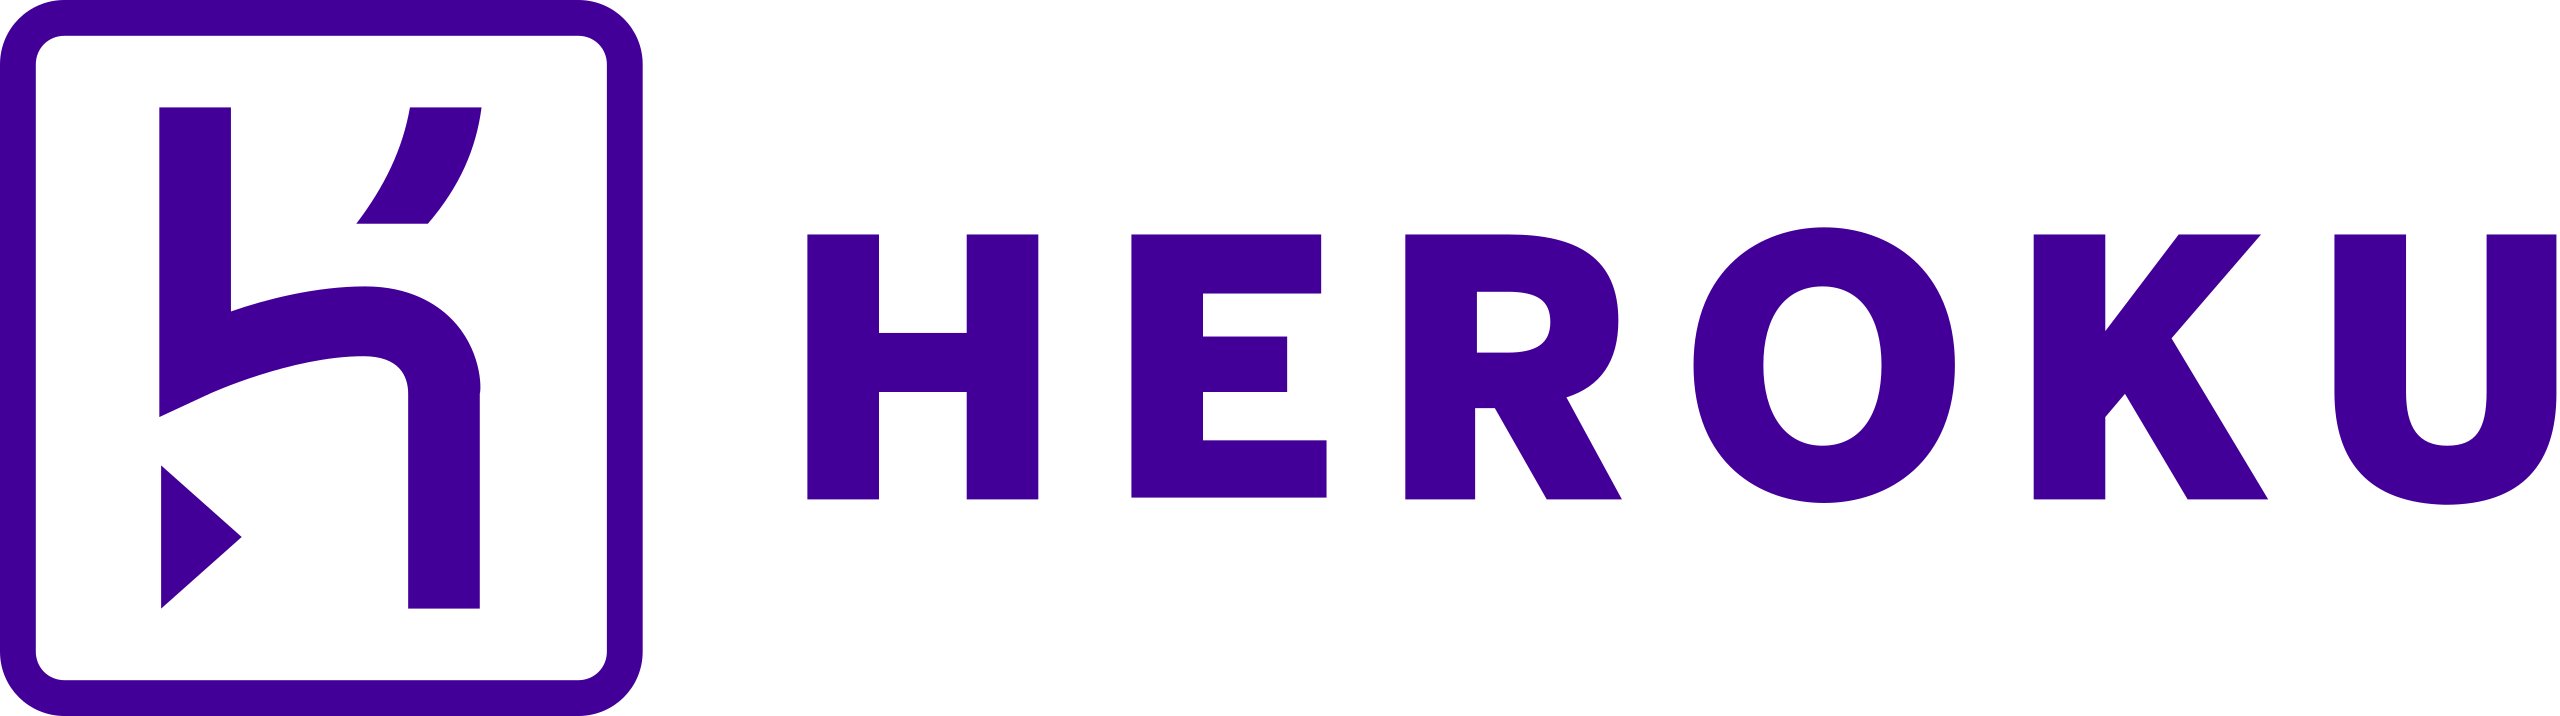 Heroku_logo.svg.png